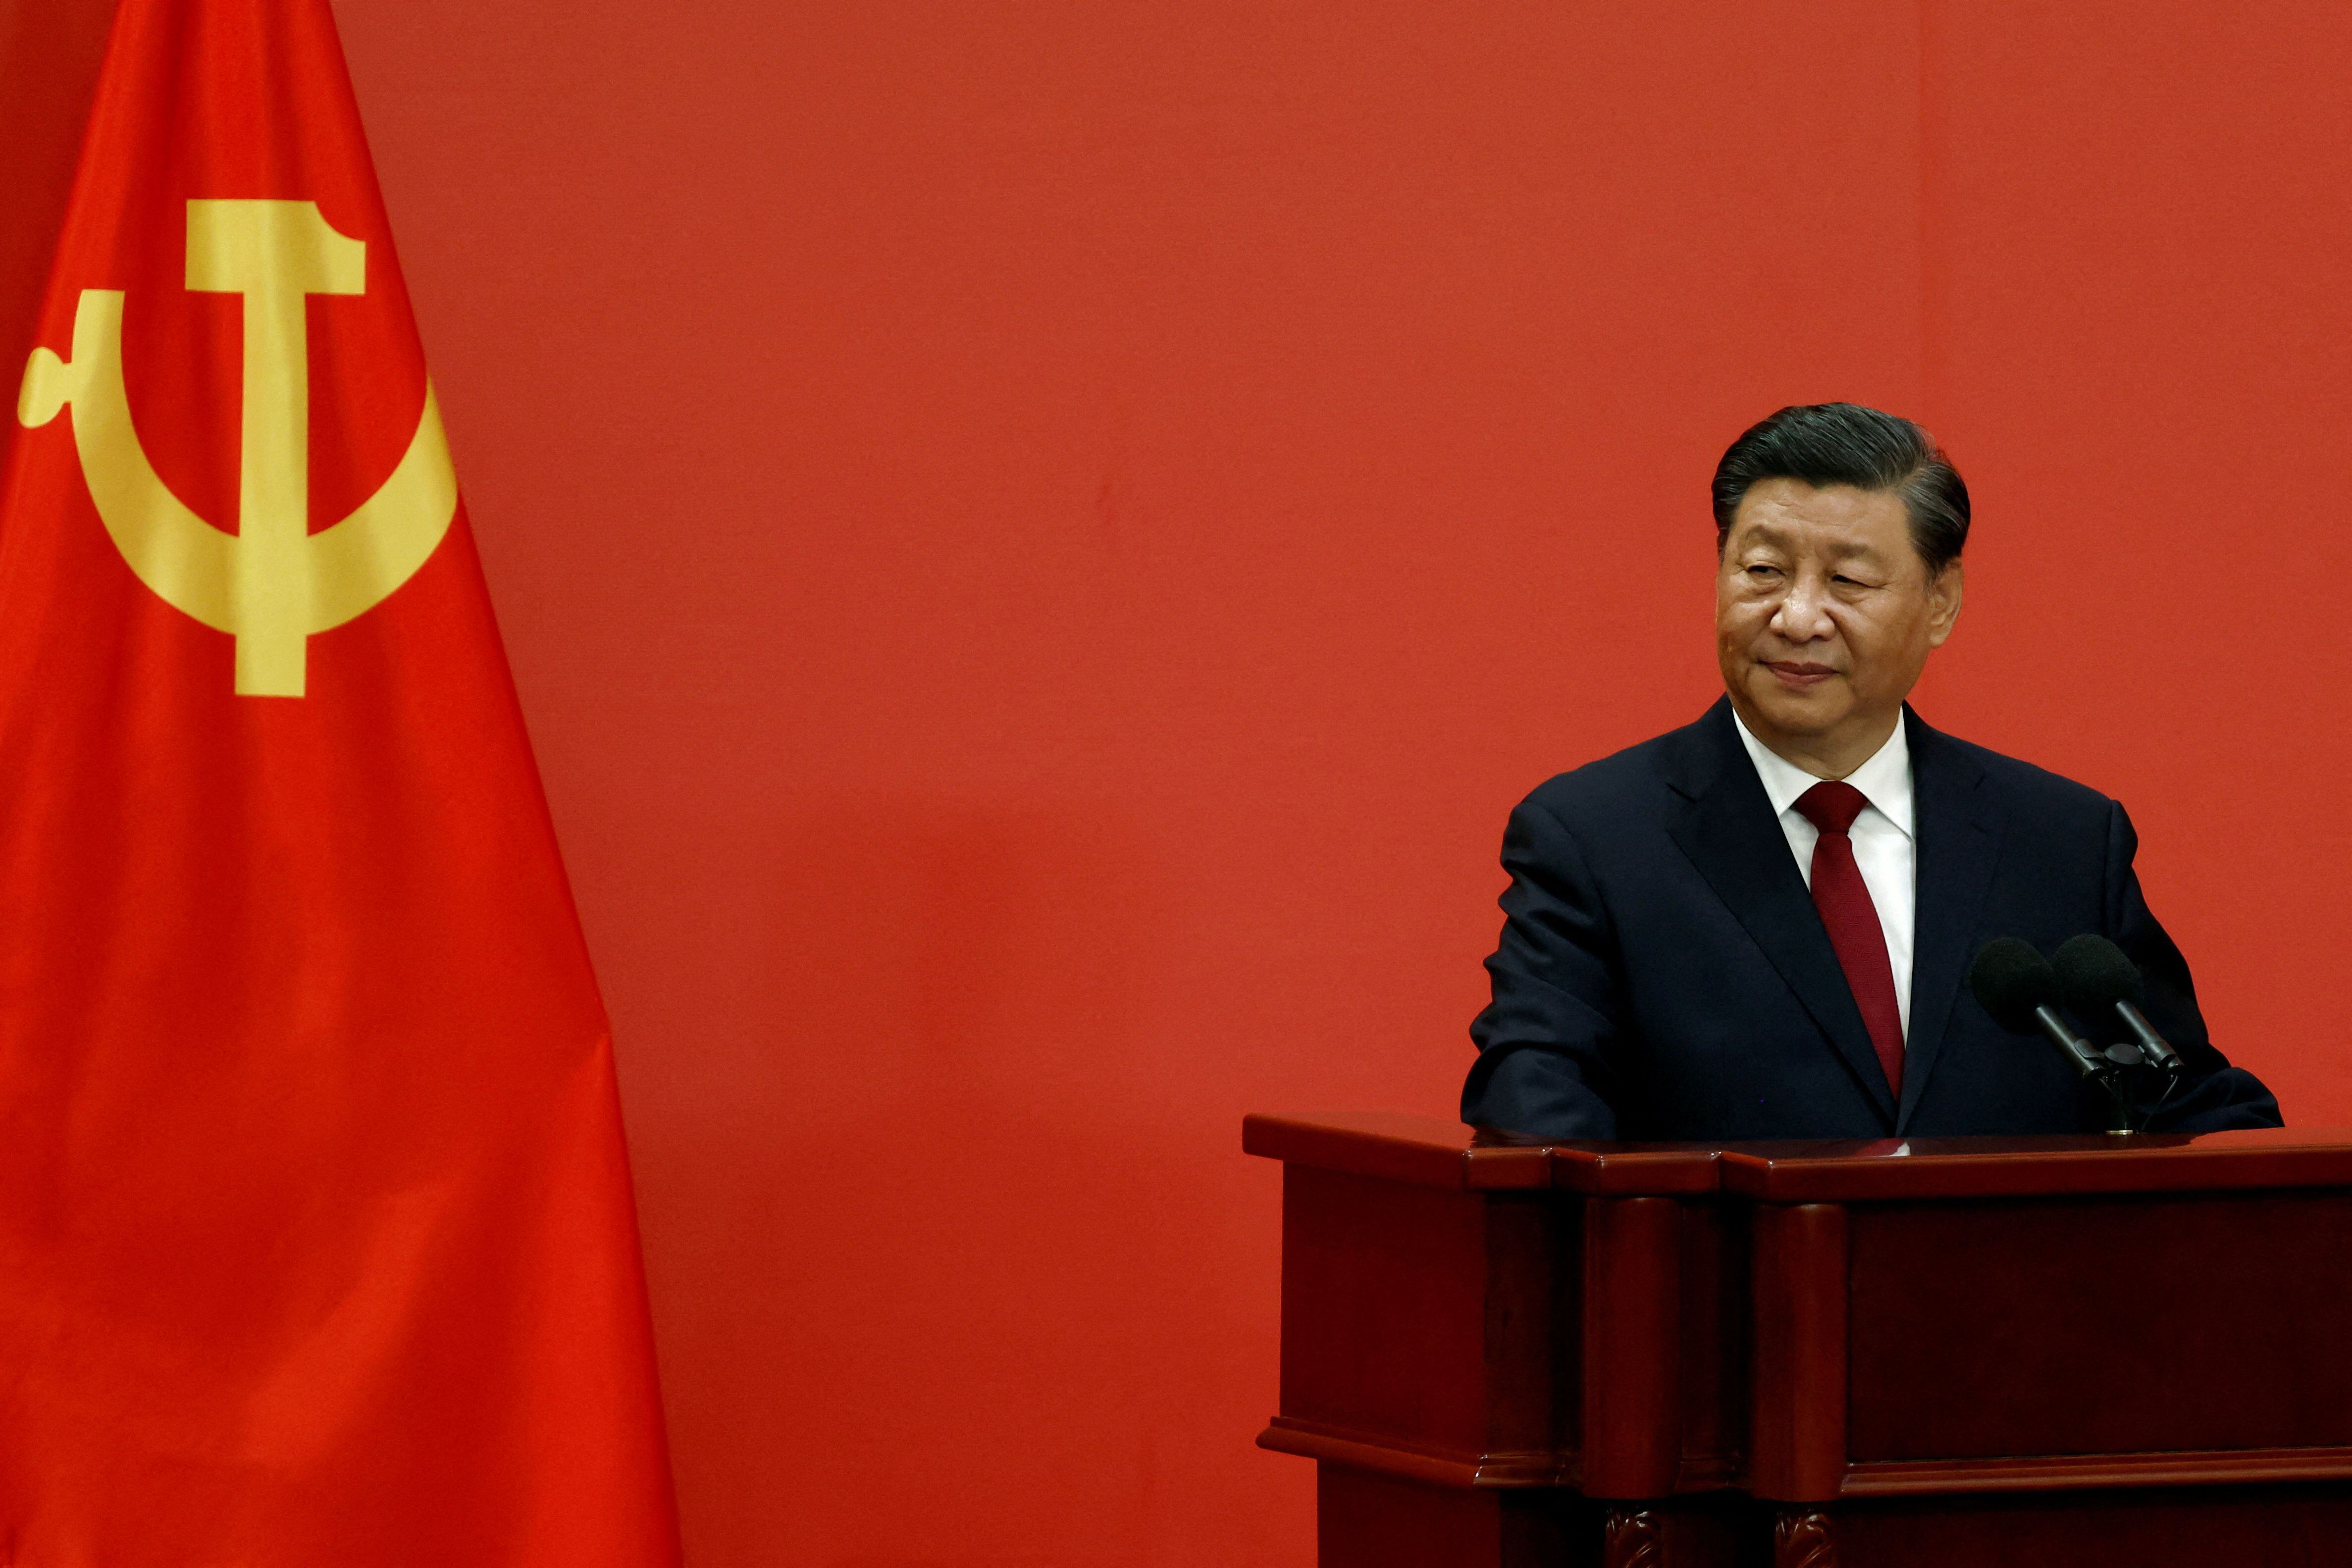 Xi pidió a la gente paciencia y perseverancia en este camino hacia una modernización del país y la prosperidad común (REUTERS)